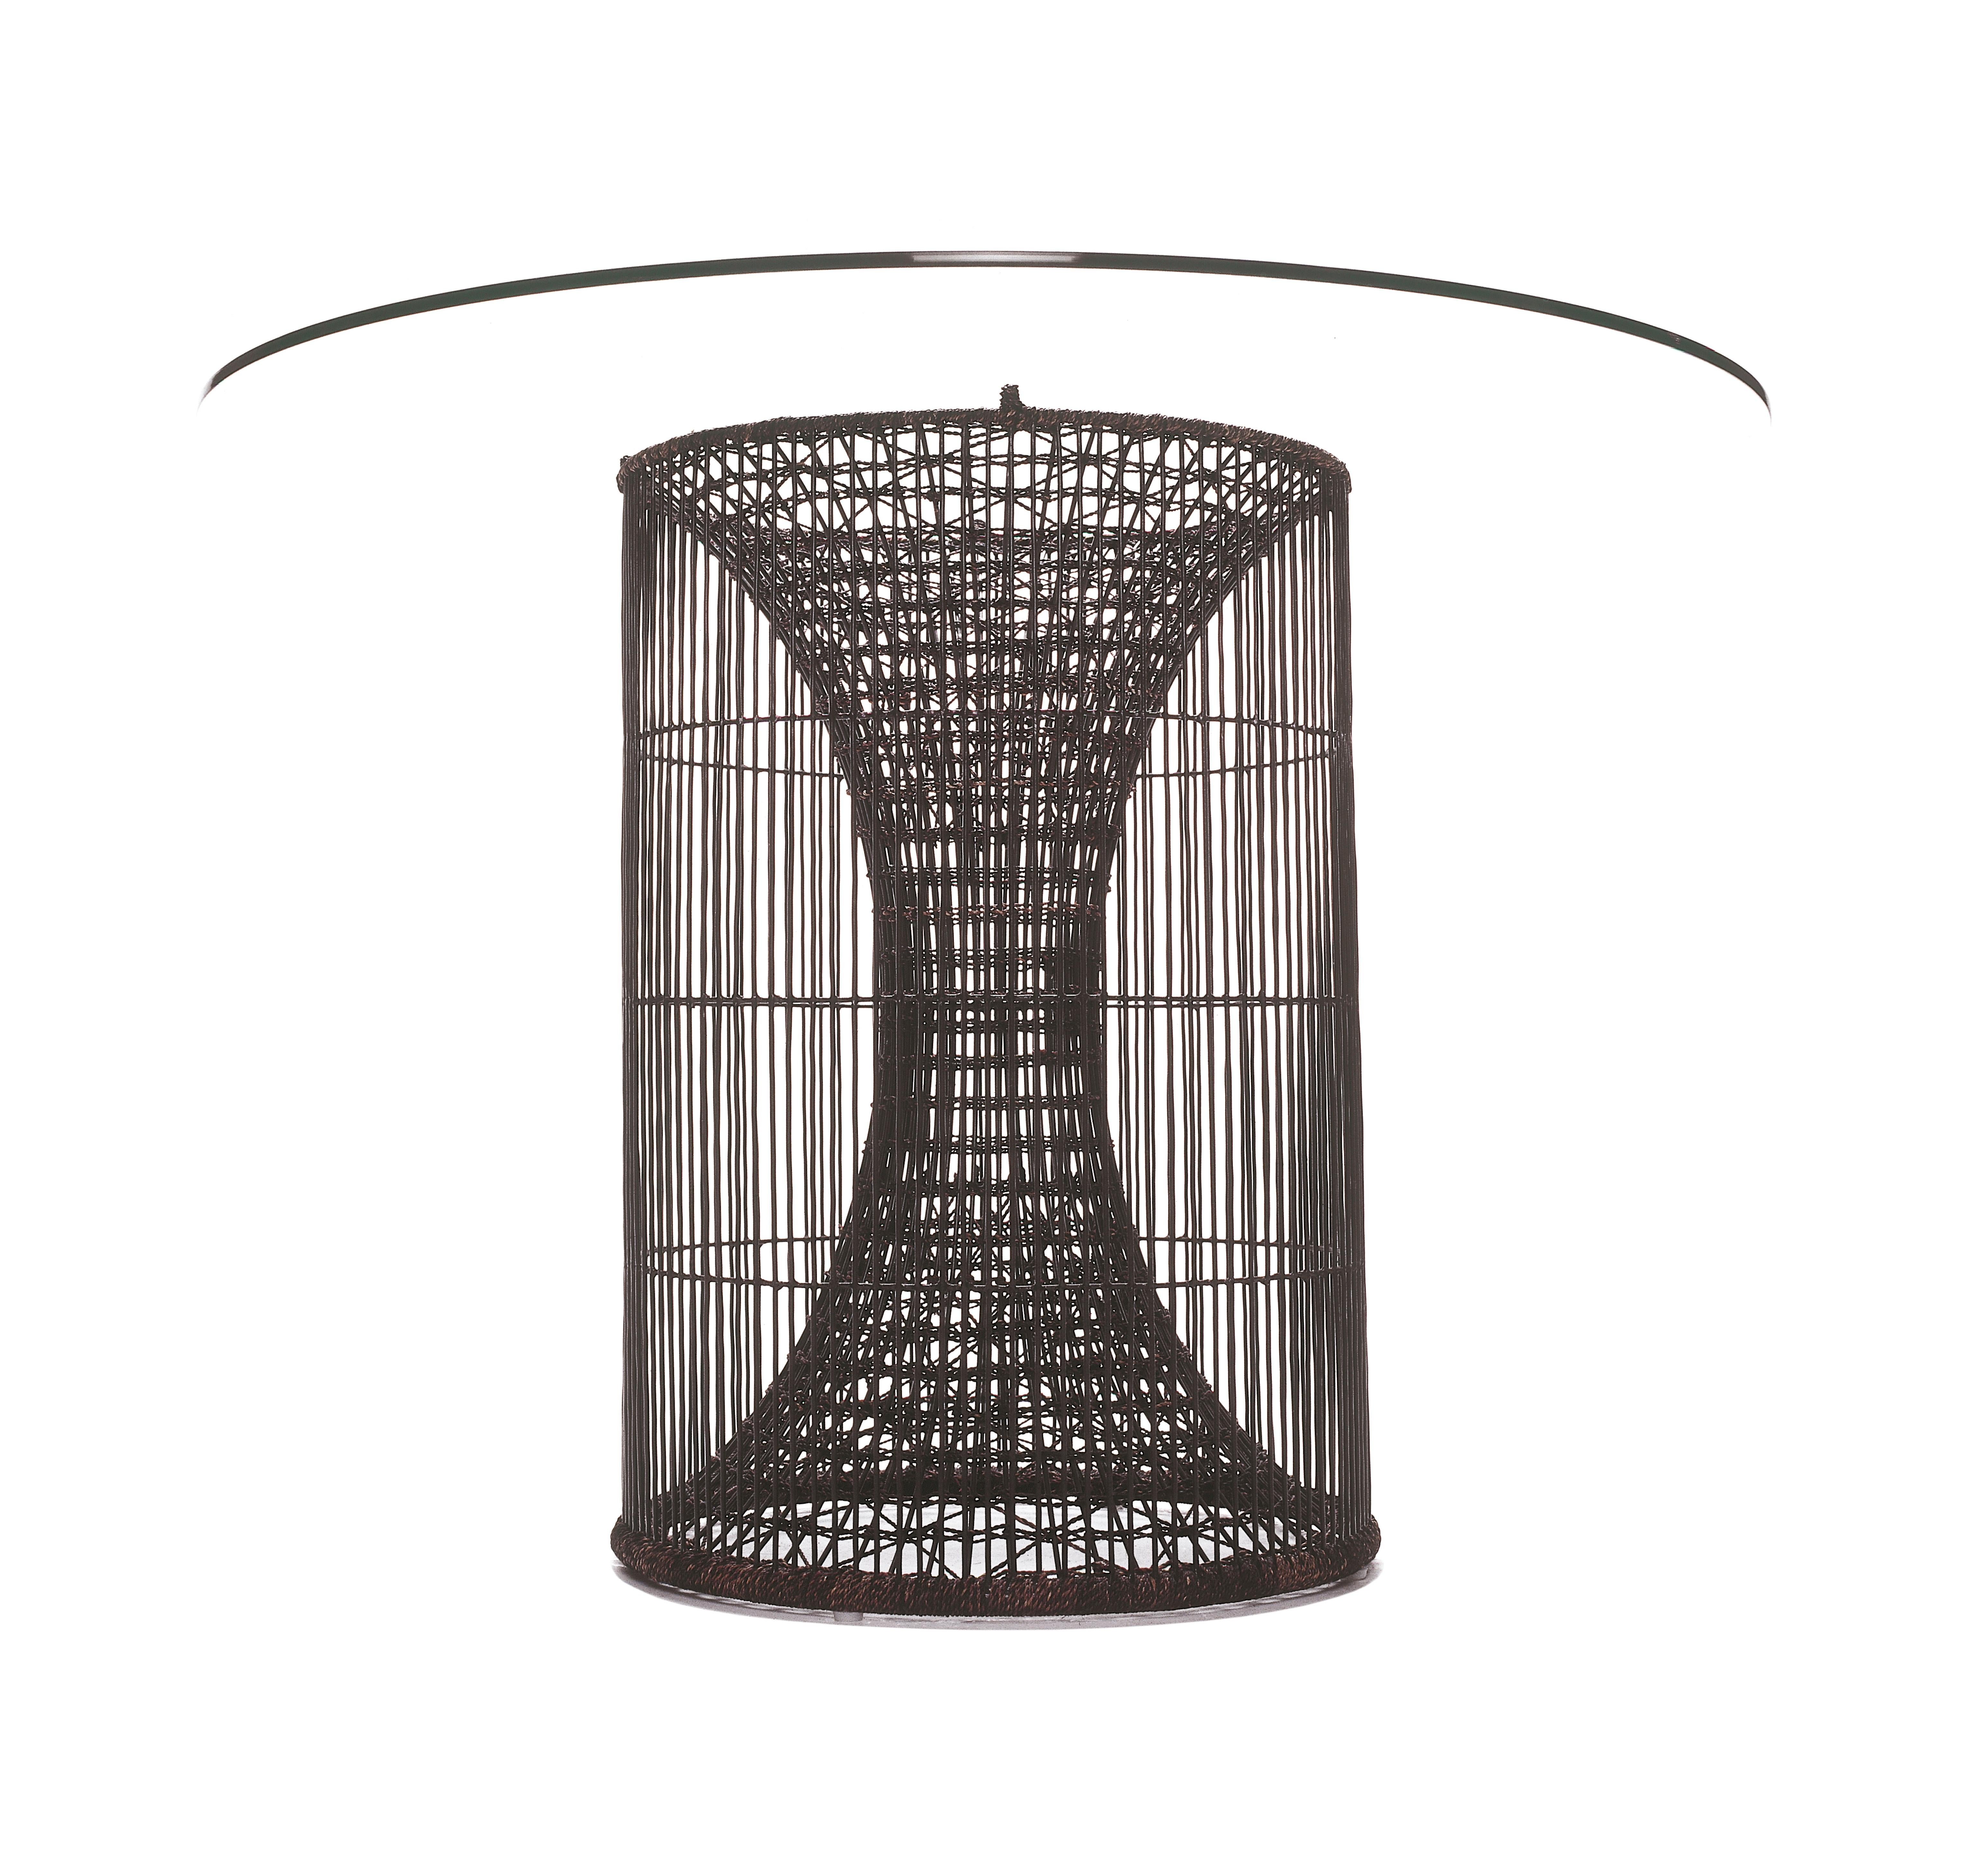 Großer esstisch amaya von Kenneth Cobonpue
MATERIALEN: Polyethelene. Stahl. Glas.
Abmessungen: 
Tisch Durchmesser 76 cm x Höhe 74 cm
Glas Durchmesser 137cm x Höhe 1cm

Inspiriert von Fischreusen, ähneln die Amaya-Tische einem Strudel, der von einem